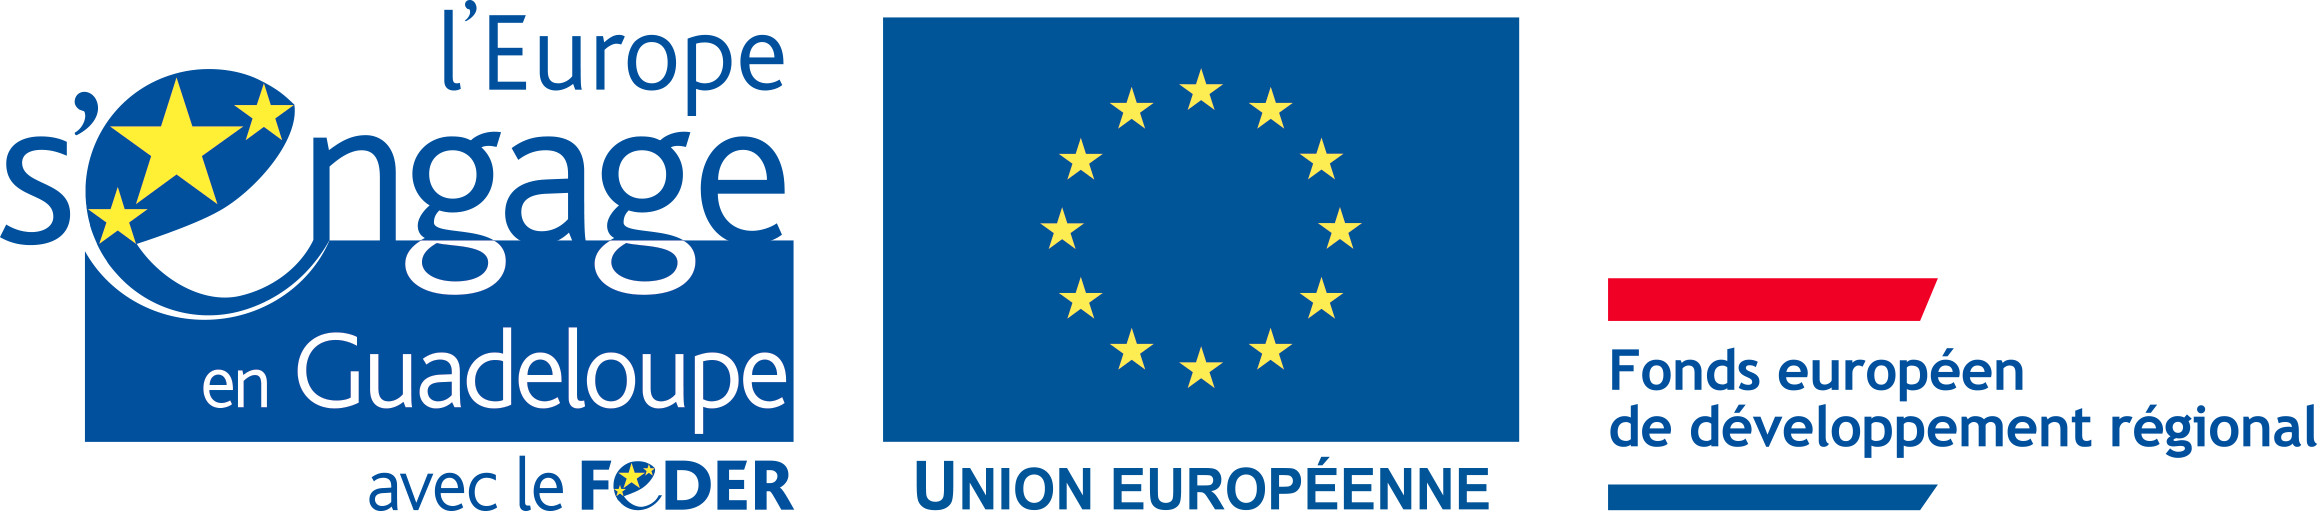 Site cofinancé par l'Union européenne via le FEDER